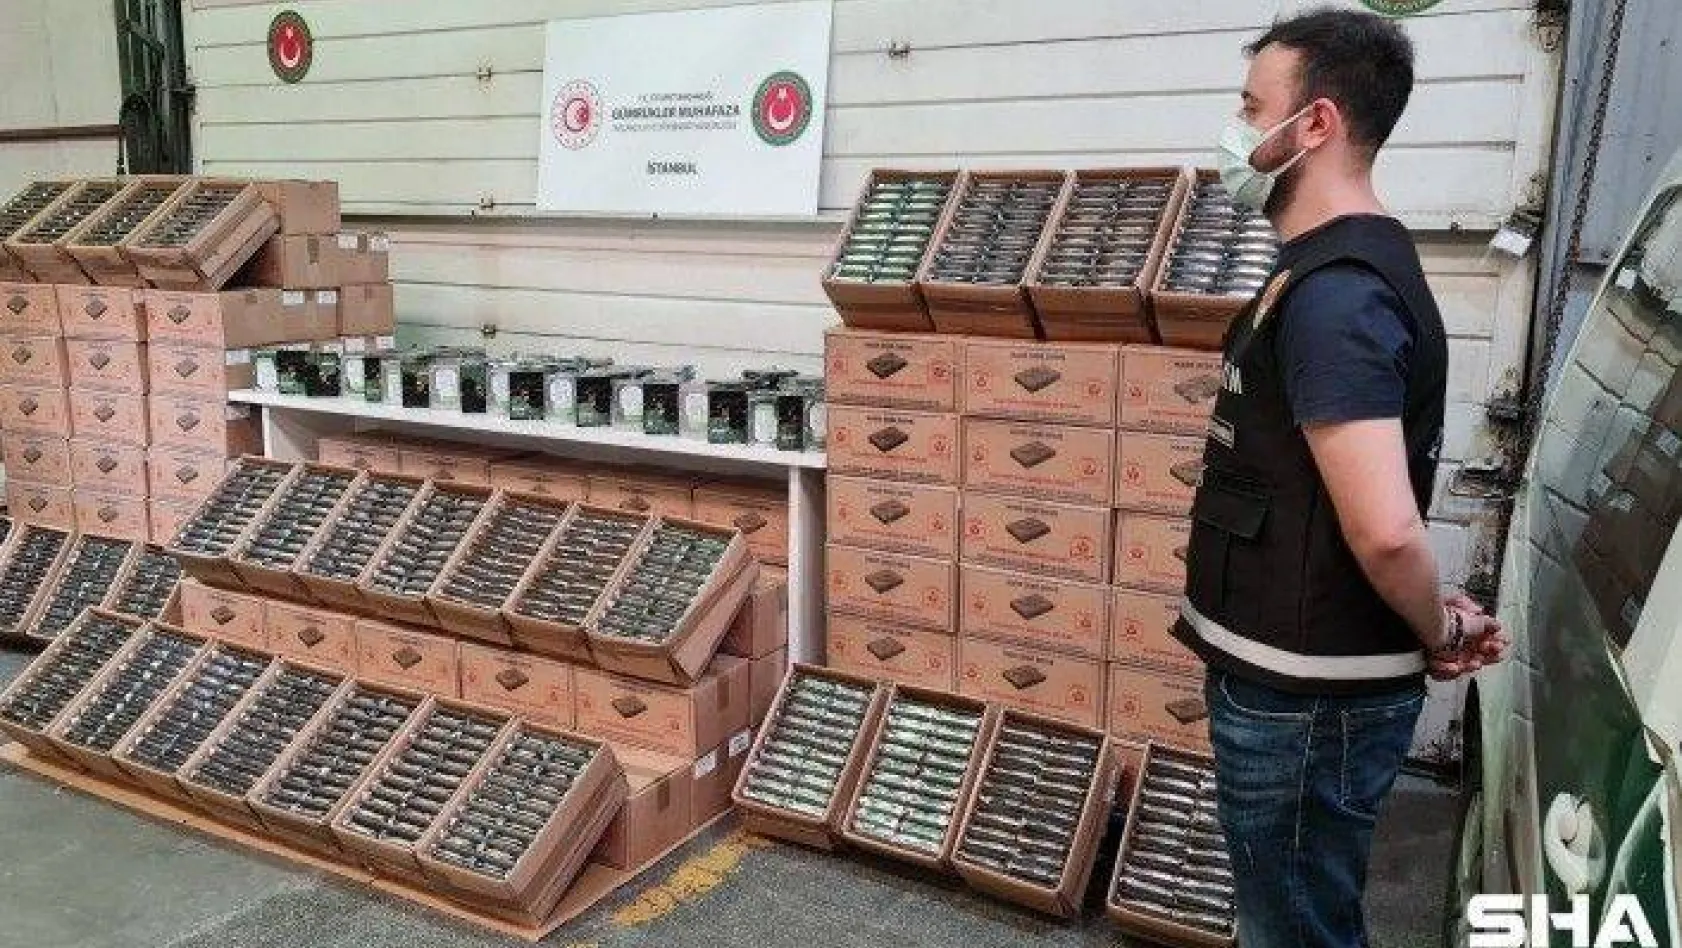 Atatürk Havalimanı kargo bölümünde operasyon: Kullanılmış hard diskleri sıfır diye satacak şebeke çökertildi